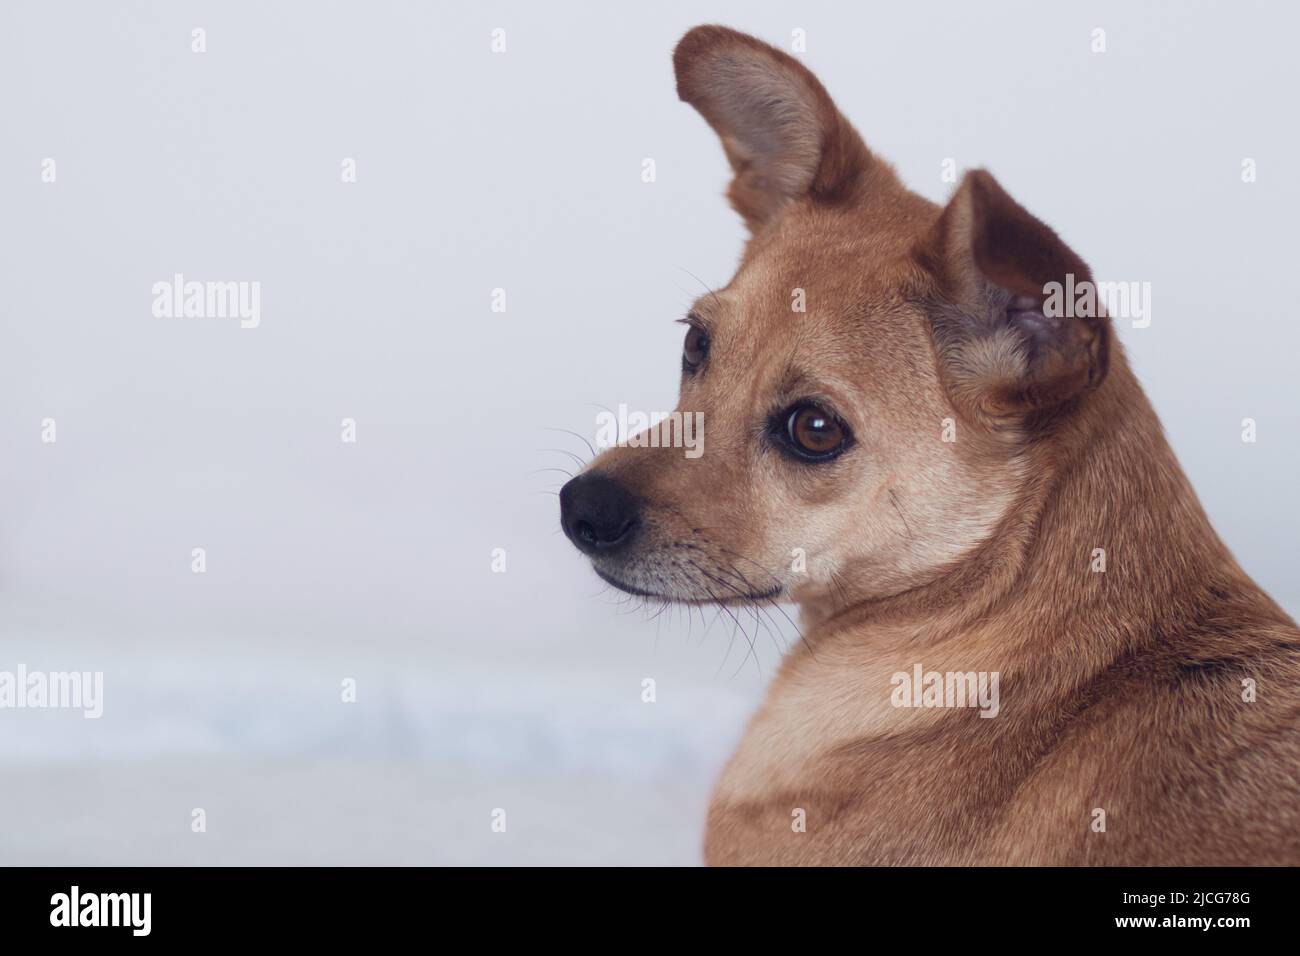 Primo piano di un cane di razza mista marrone dolce che guarda lontano dalla fotocamera con un'espressione facciale tenera isolata su uno sfondo bianco. Spazio per il testo Foto Stock